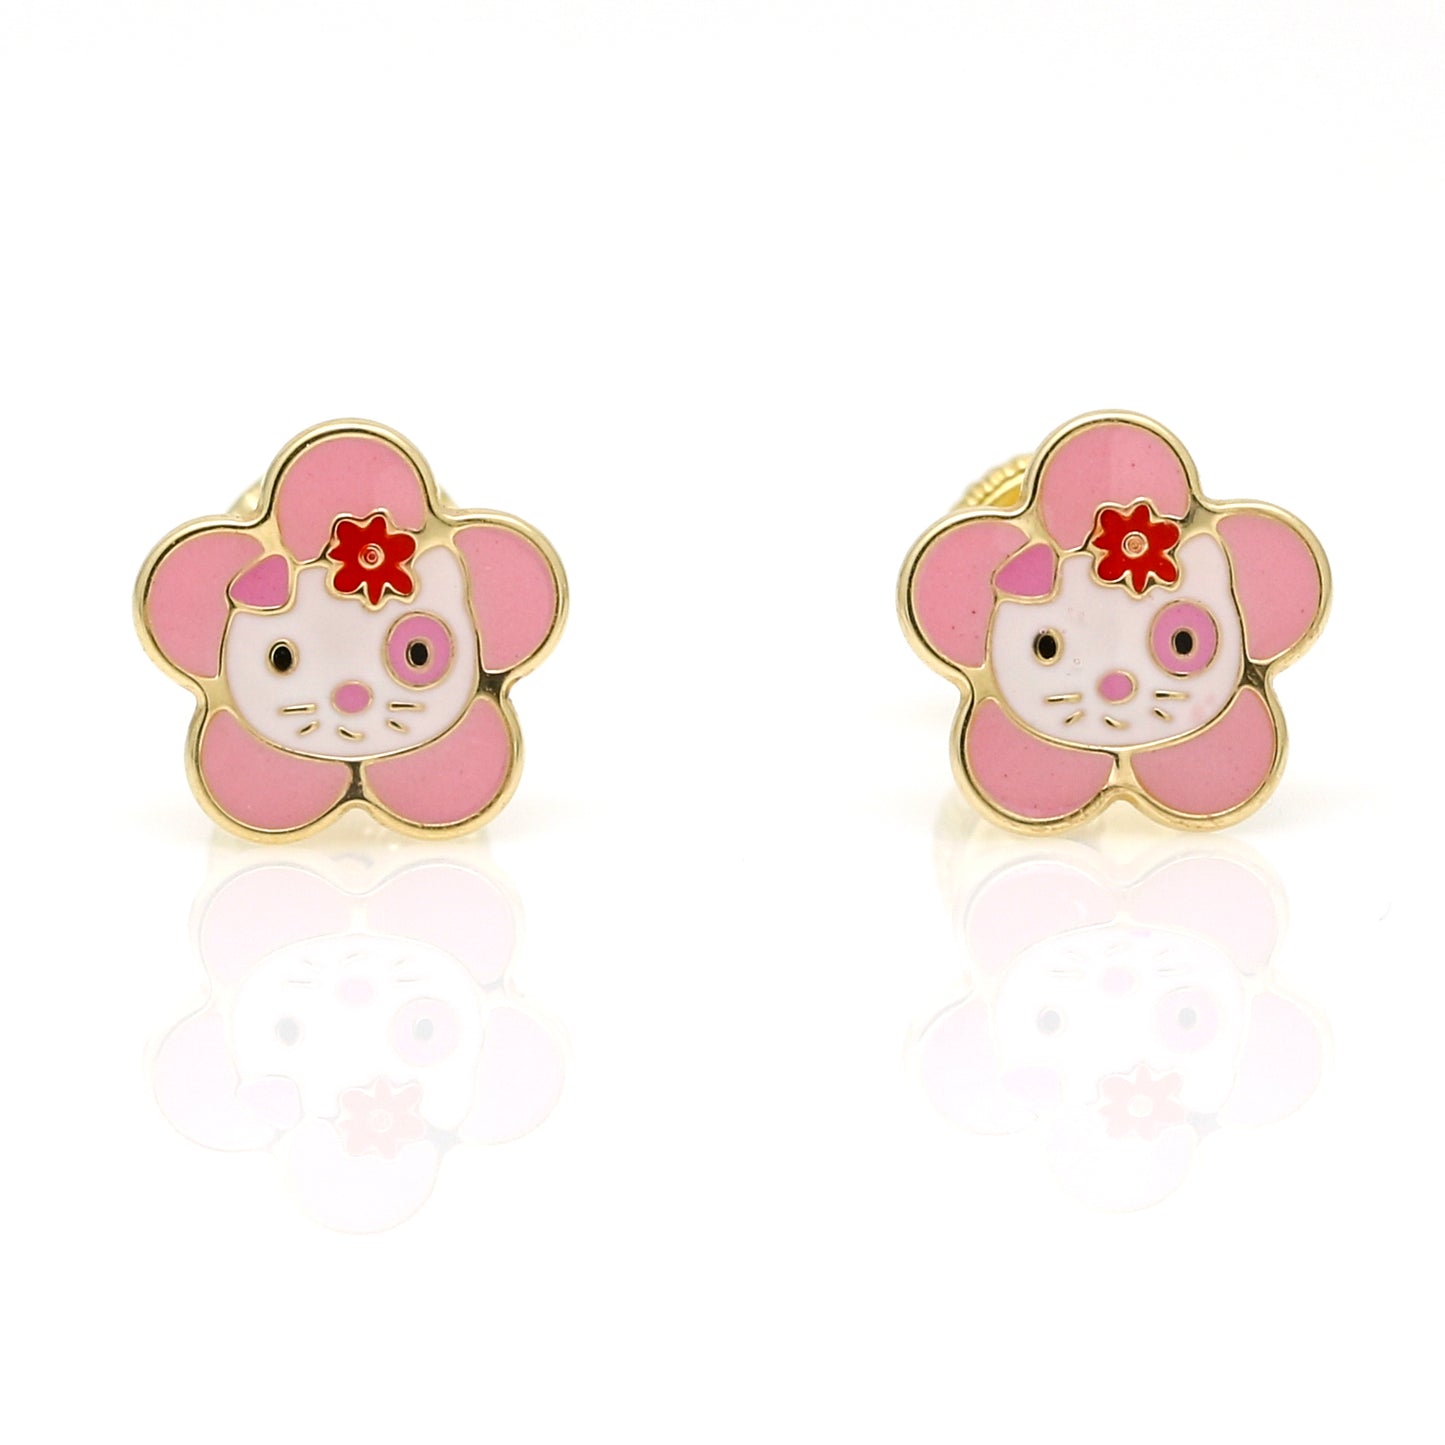 Hello Kitty Flower Enamel Stud Earrings in 14k Yellow Gold with Screwbacks Children's Jewelry